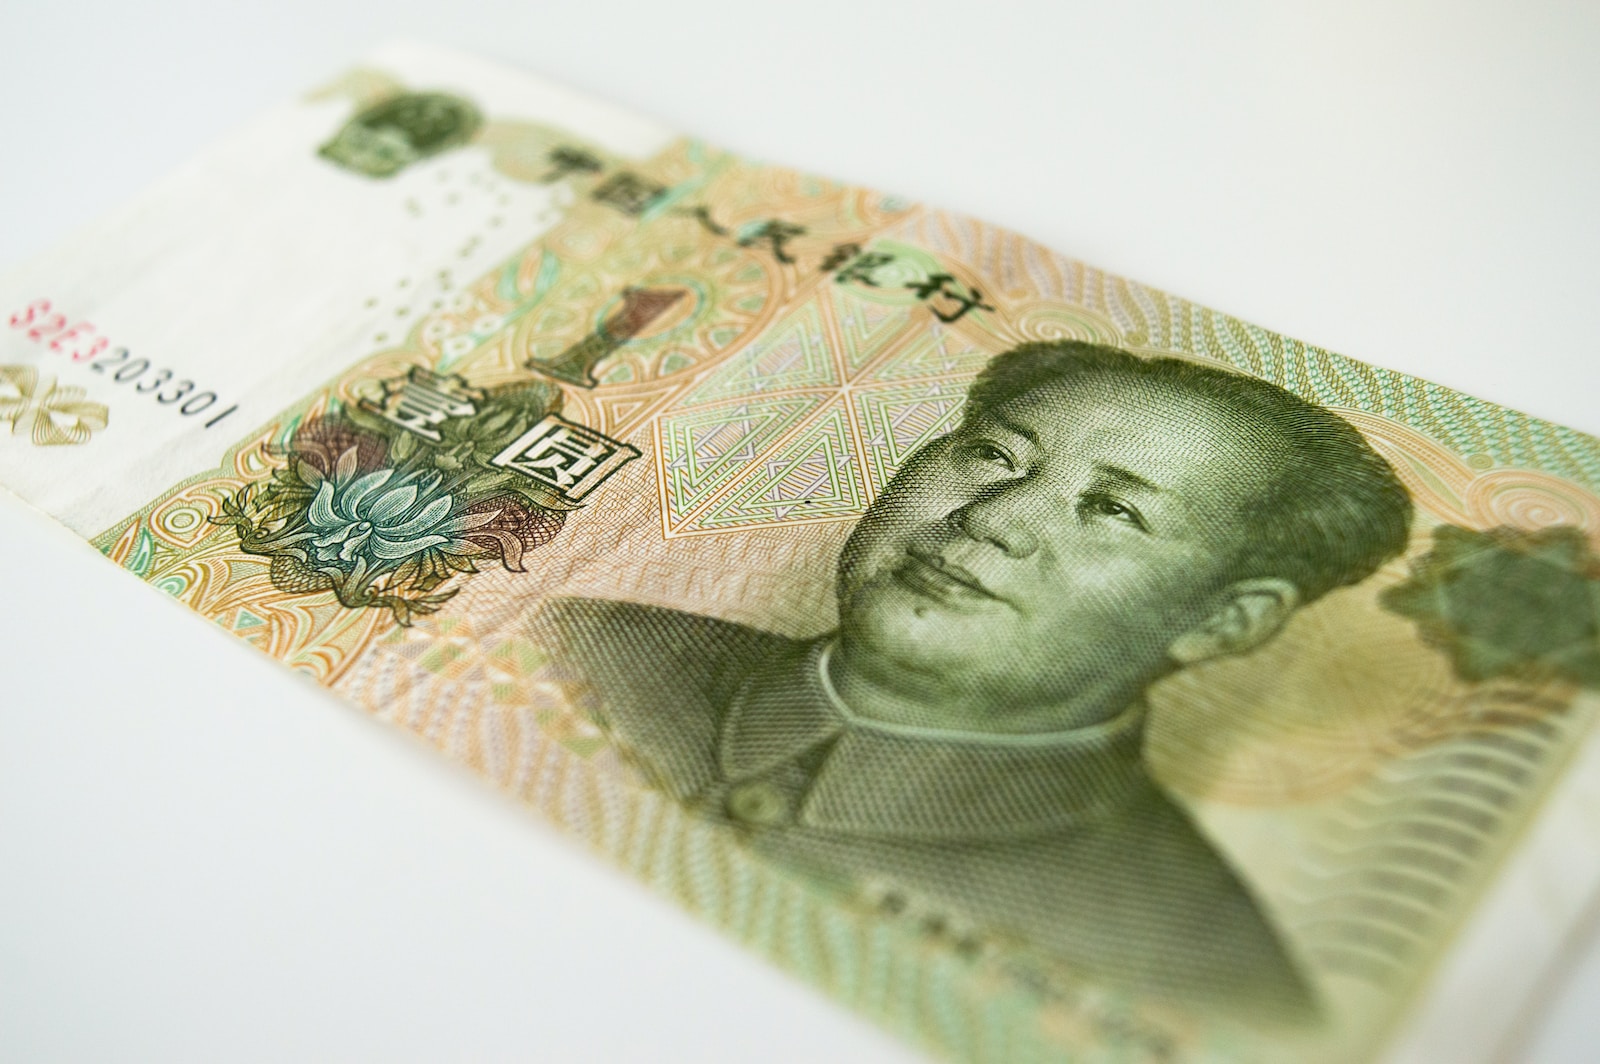 a close up of a bank note with a man's face on it